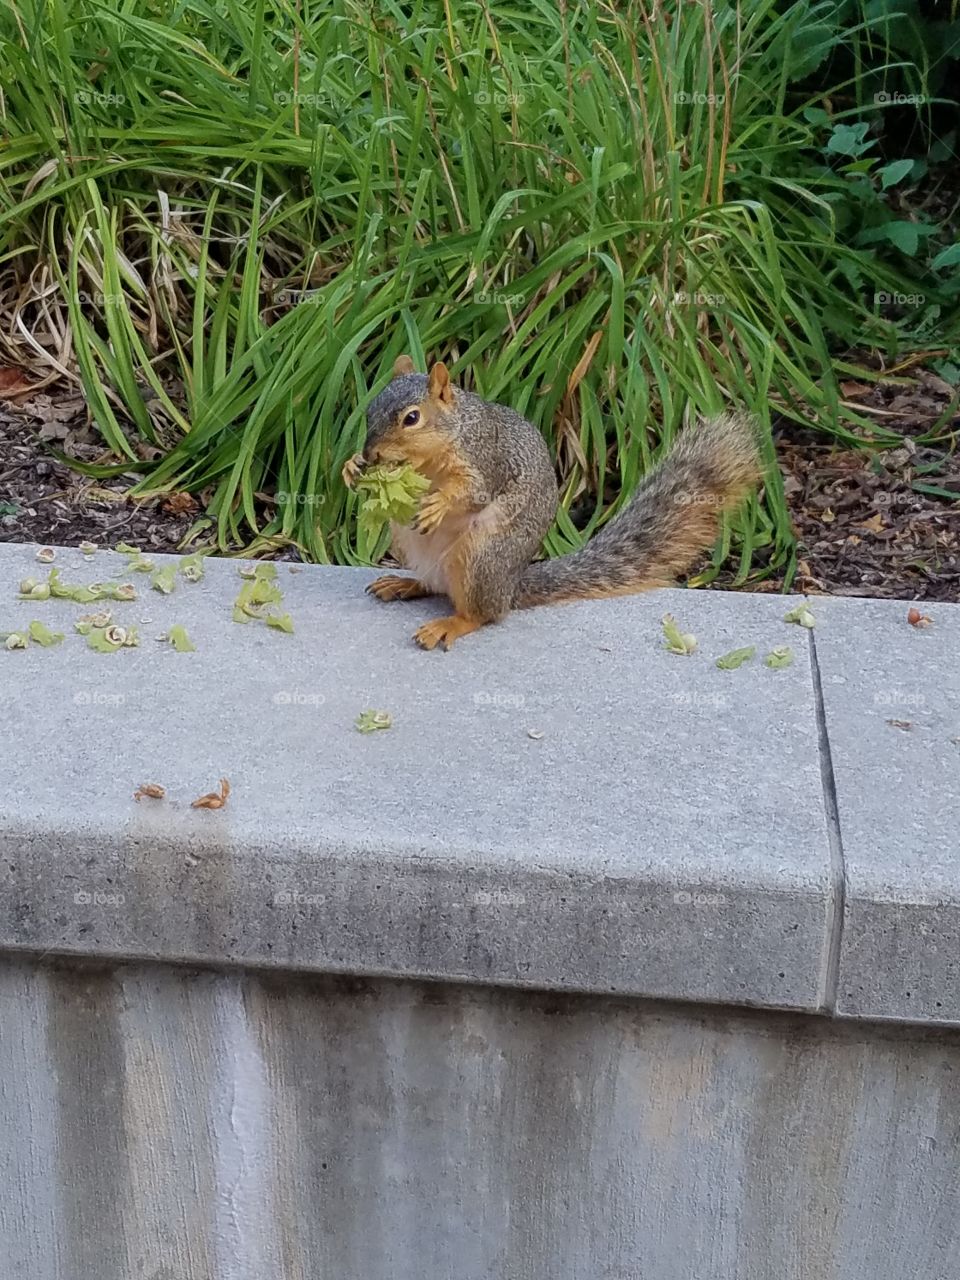 squirrel munching on greenery